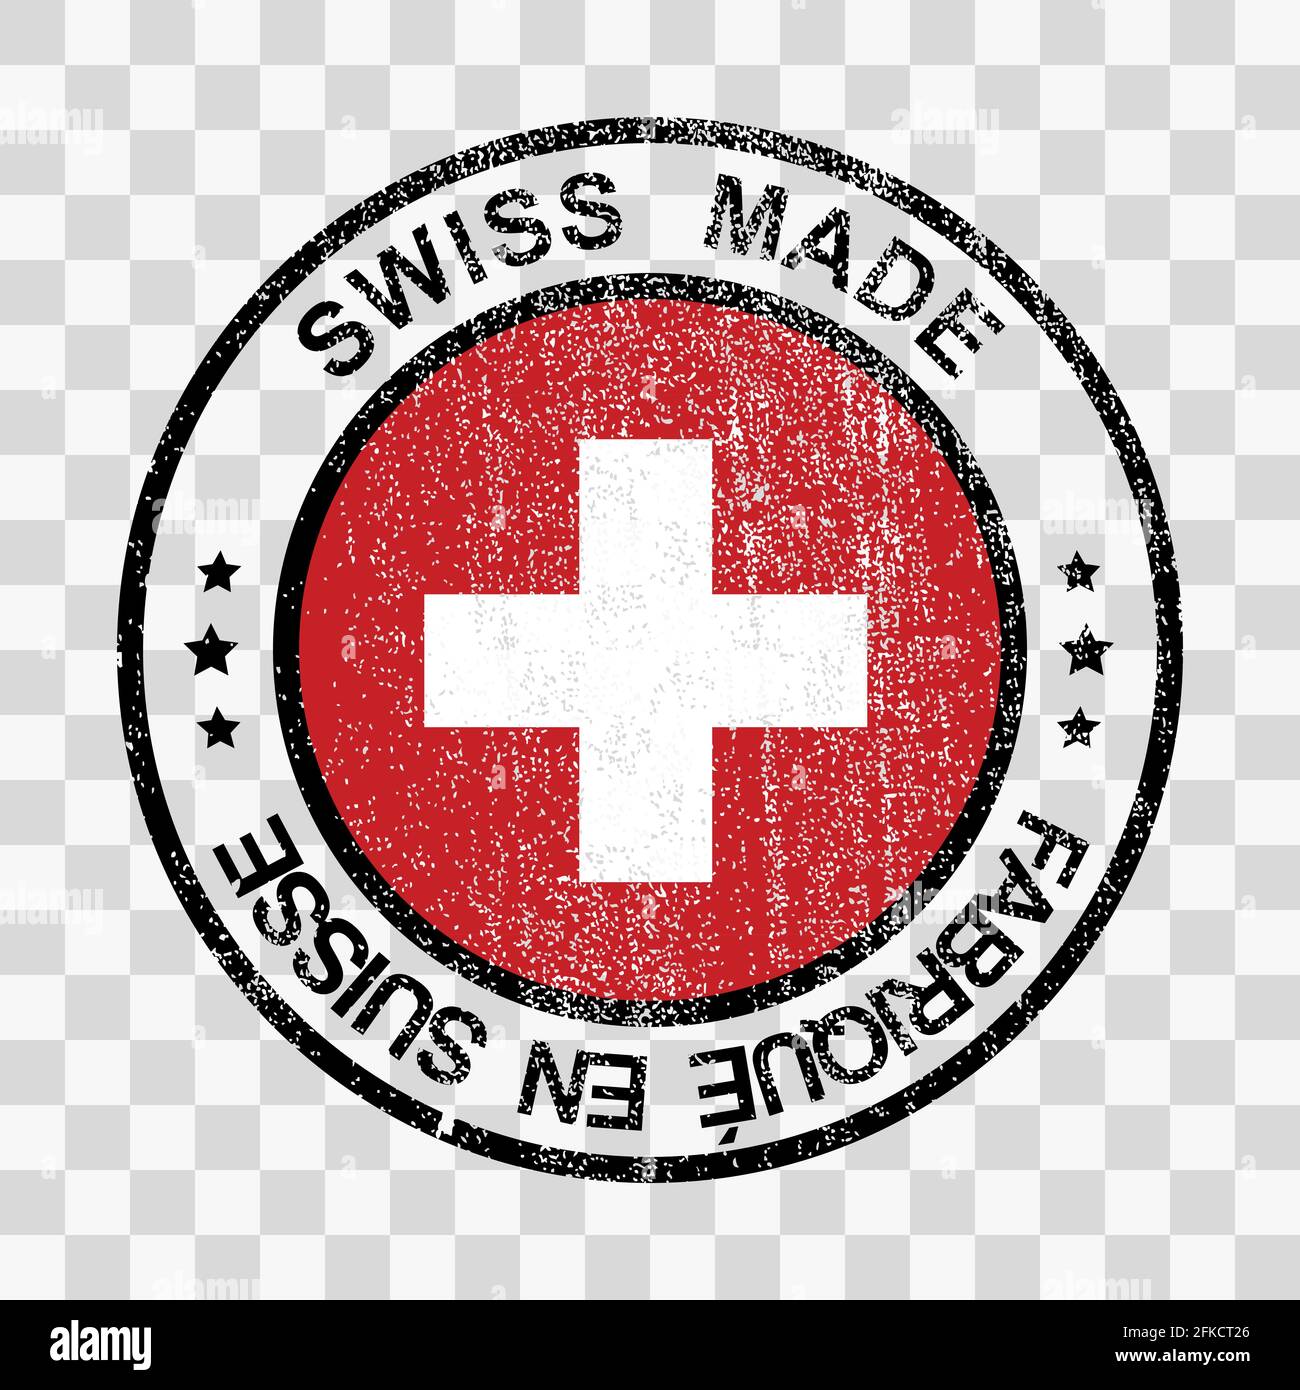 Made in Switzerland Stempel im Grunge Stil isoliert in Not gekleidet Ikone  Vorlage für Ihr Design Stock-Vektorgrafik - Alamy